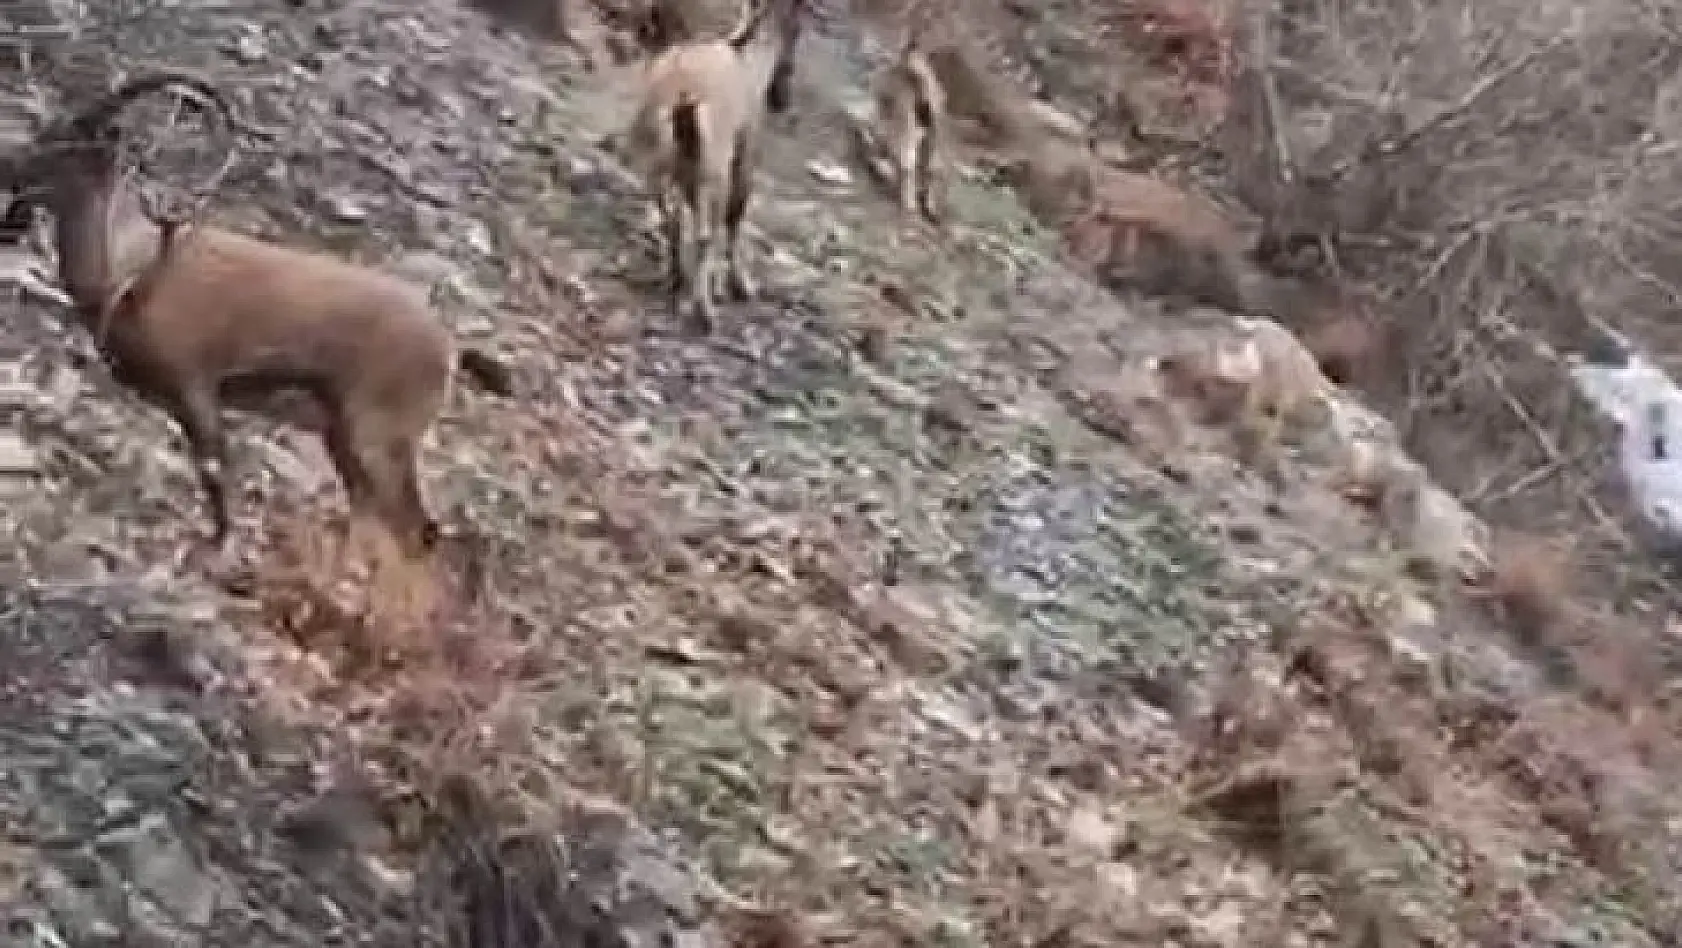 Nesli tükenme tehlikesi altında bulunan dağ keçileri yola indi, vatandaşlar cep telefonlarına sarıldı